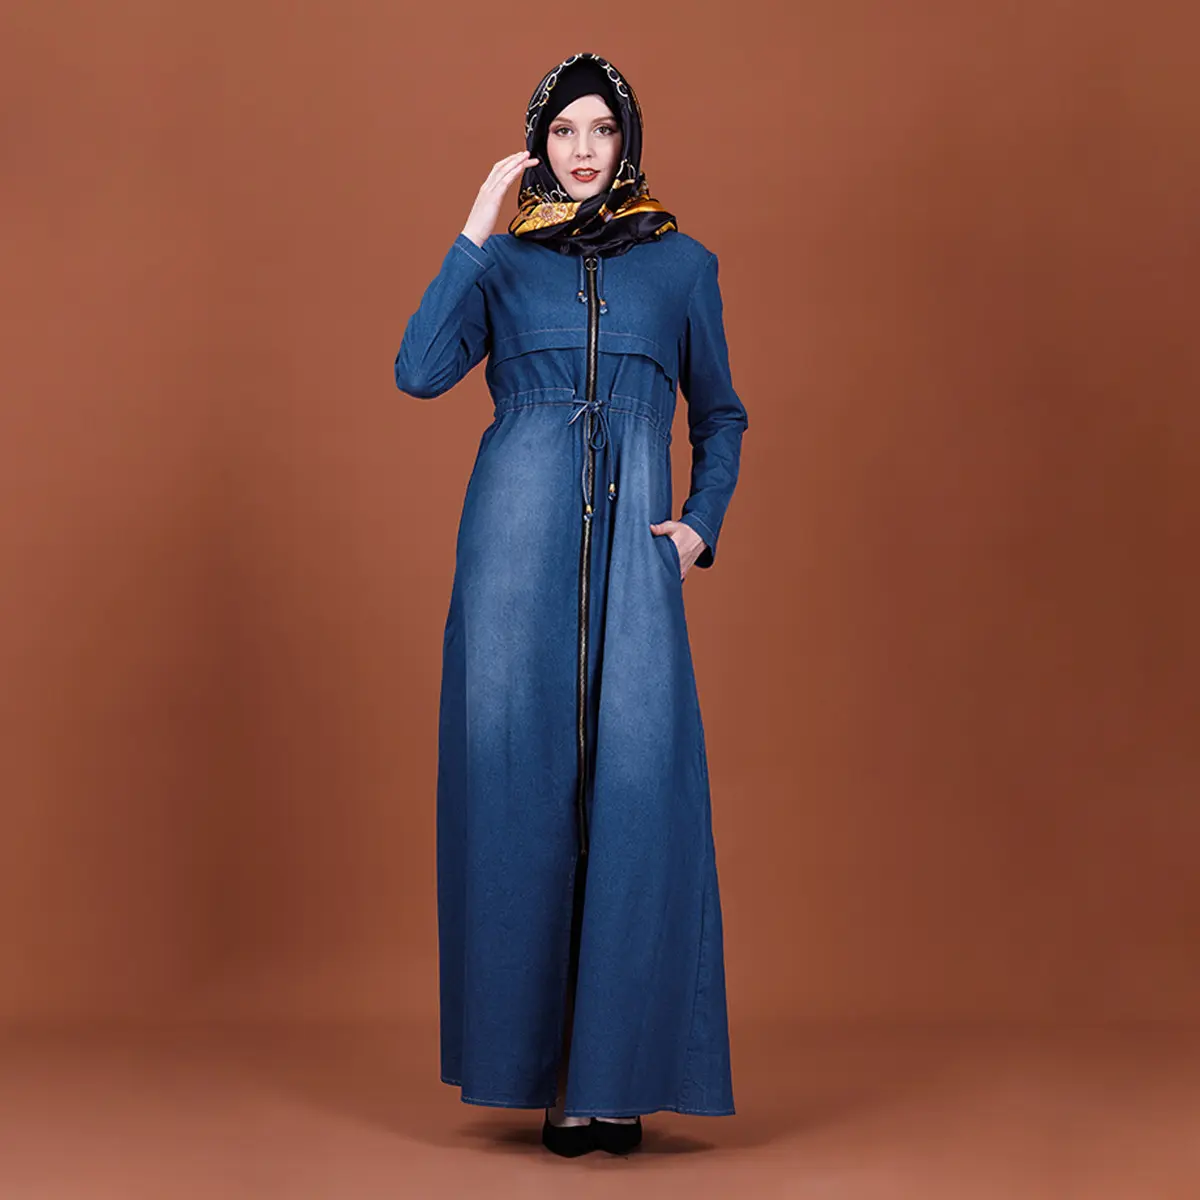 Müslüman kadın giyim İslami Denim Abaya elbise tasarımı son moda türk elbiseler Maxi uzun Abayas